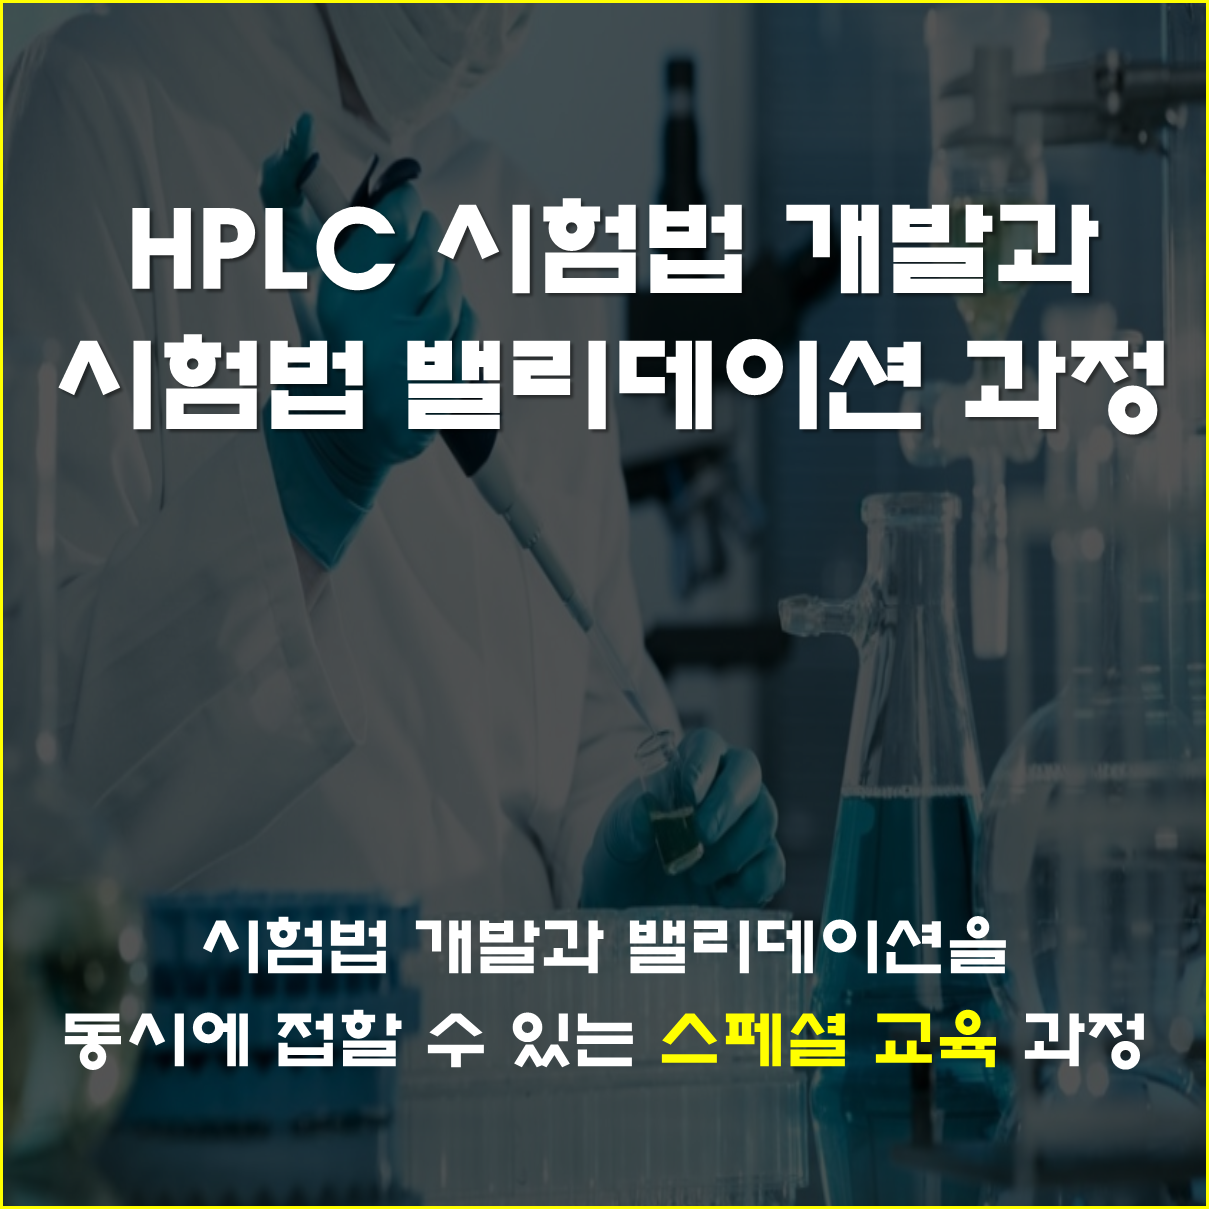 HPLC시험법 개발과 시험법 밸리데이션 (2일 과정)